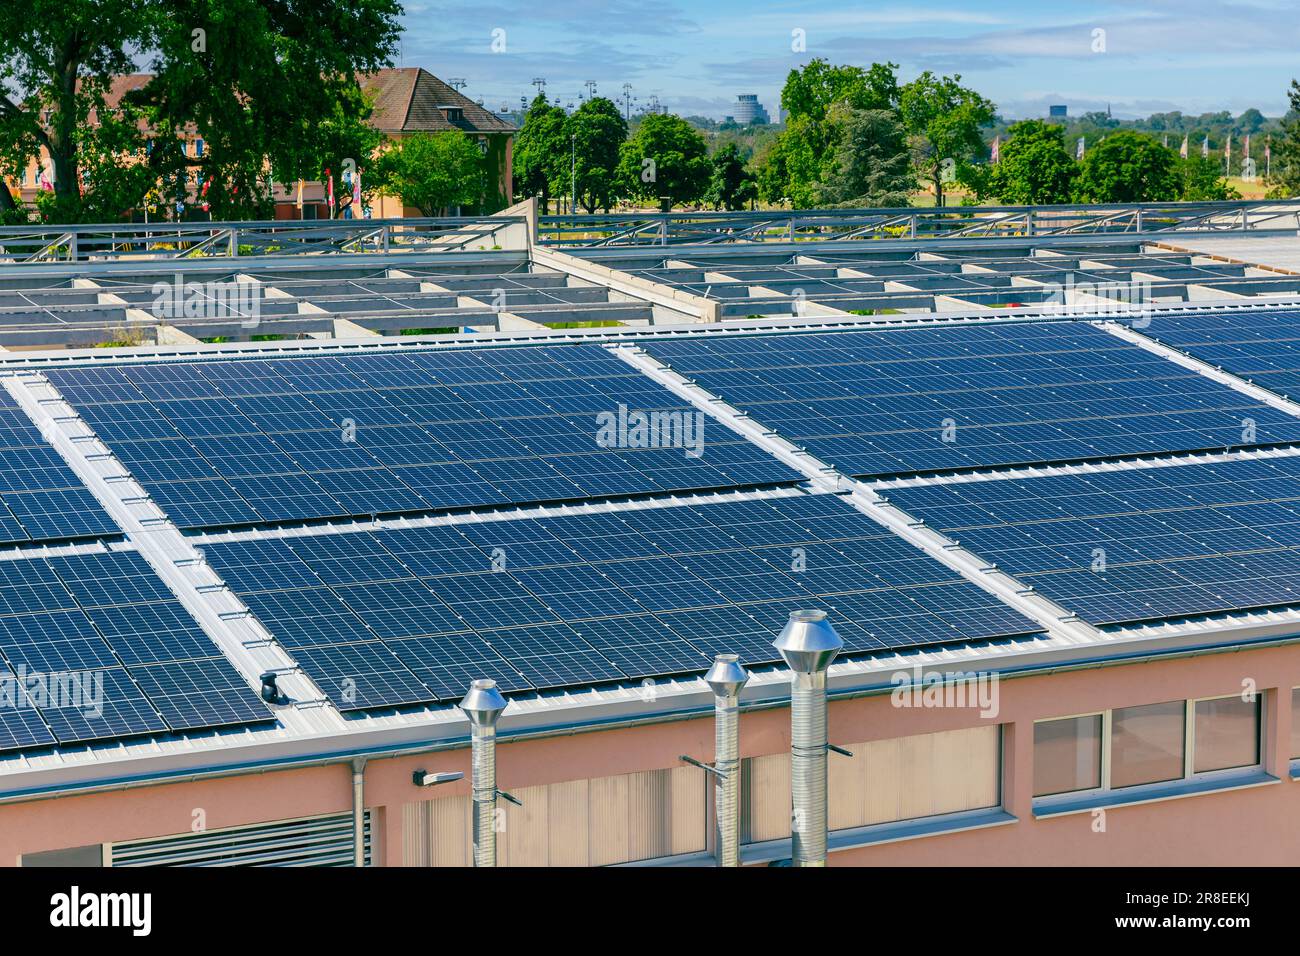 Solarpaneele auf dem Dach eines großen Industriegebäudes oder Lagerhauses Stockfoto